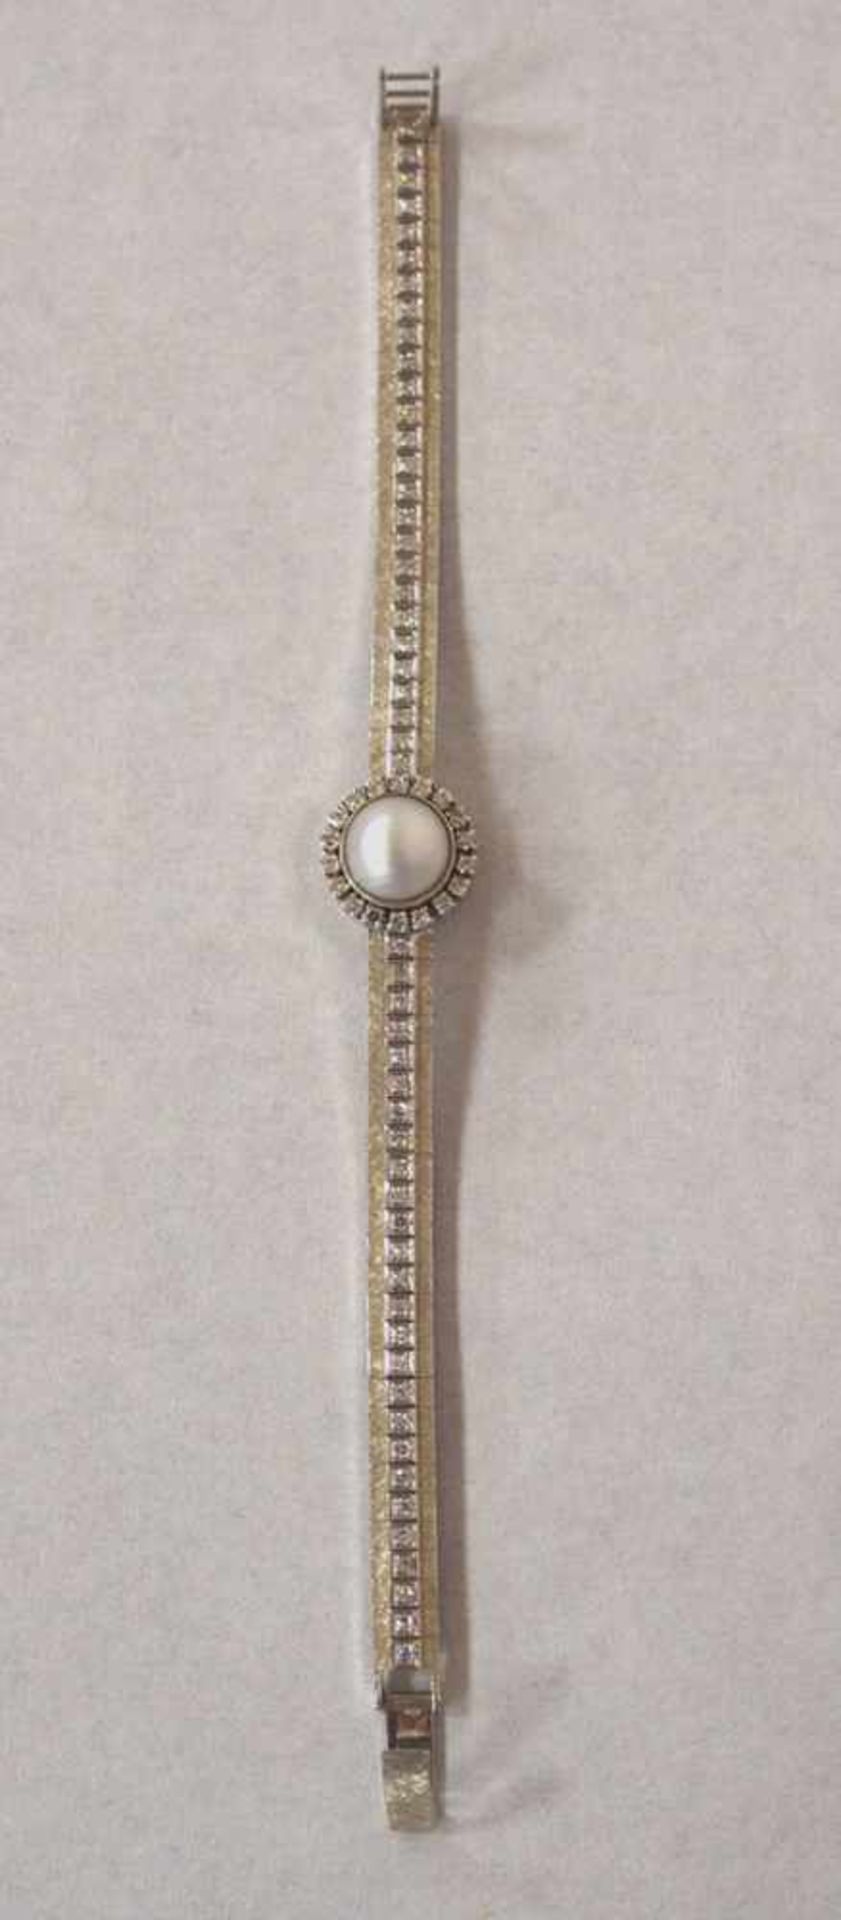 Armband750er Weissgold, Perle, umgeben von Brillanten, Band mit Brillantbesatz, Durchmesser 5,5 - Bild 2 aus 2